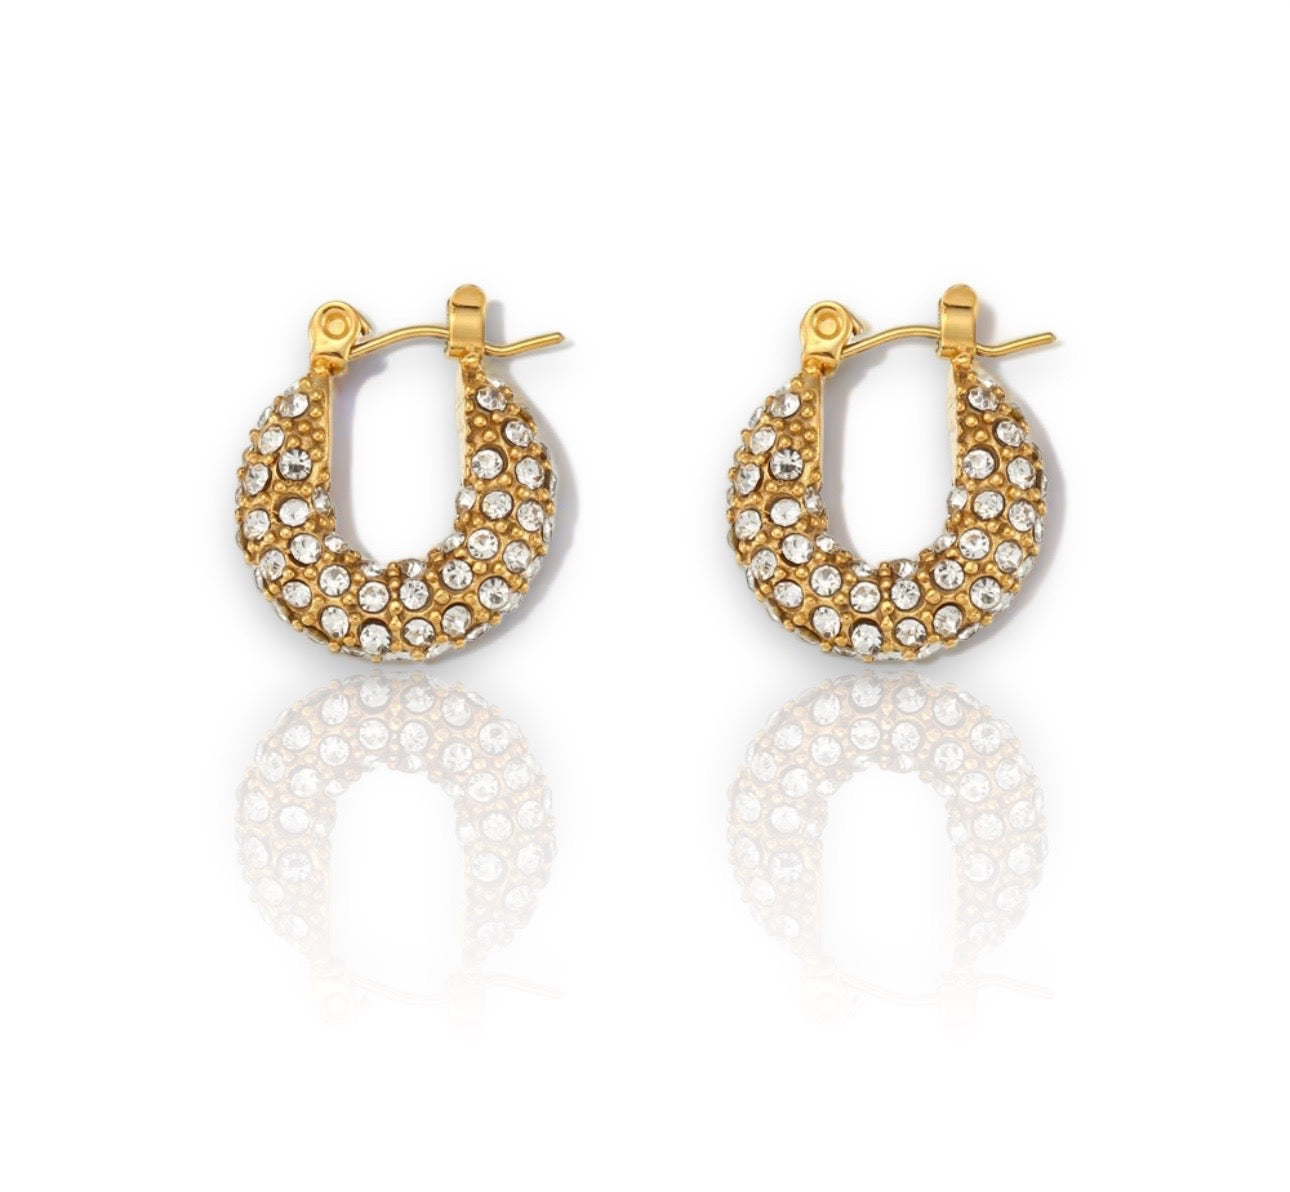 Small/zircon earrings